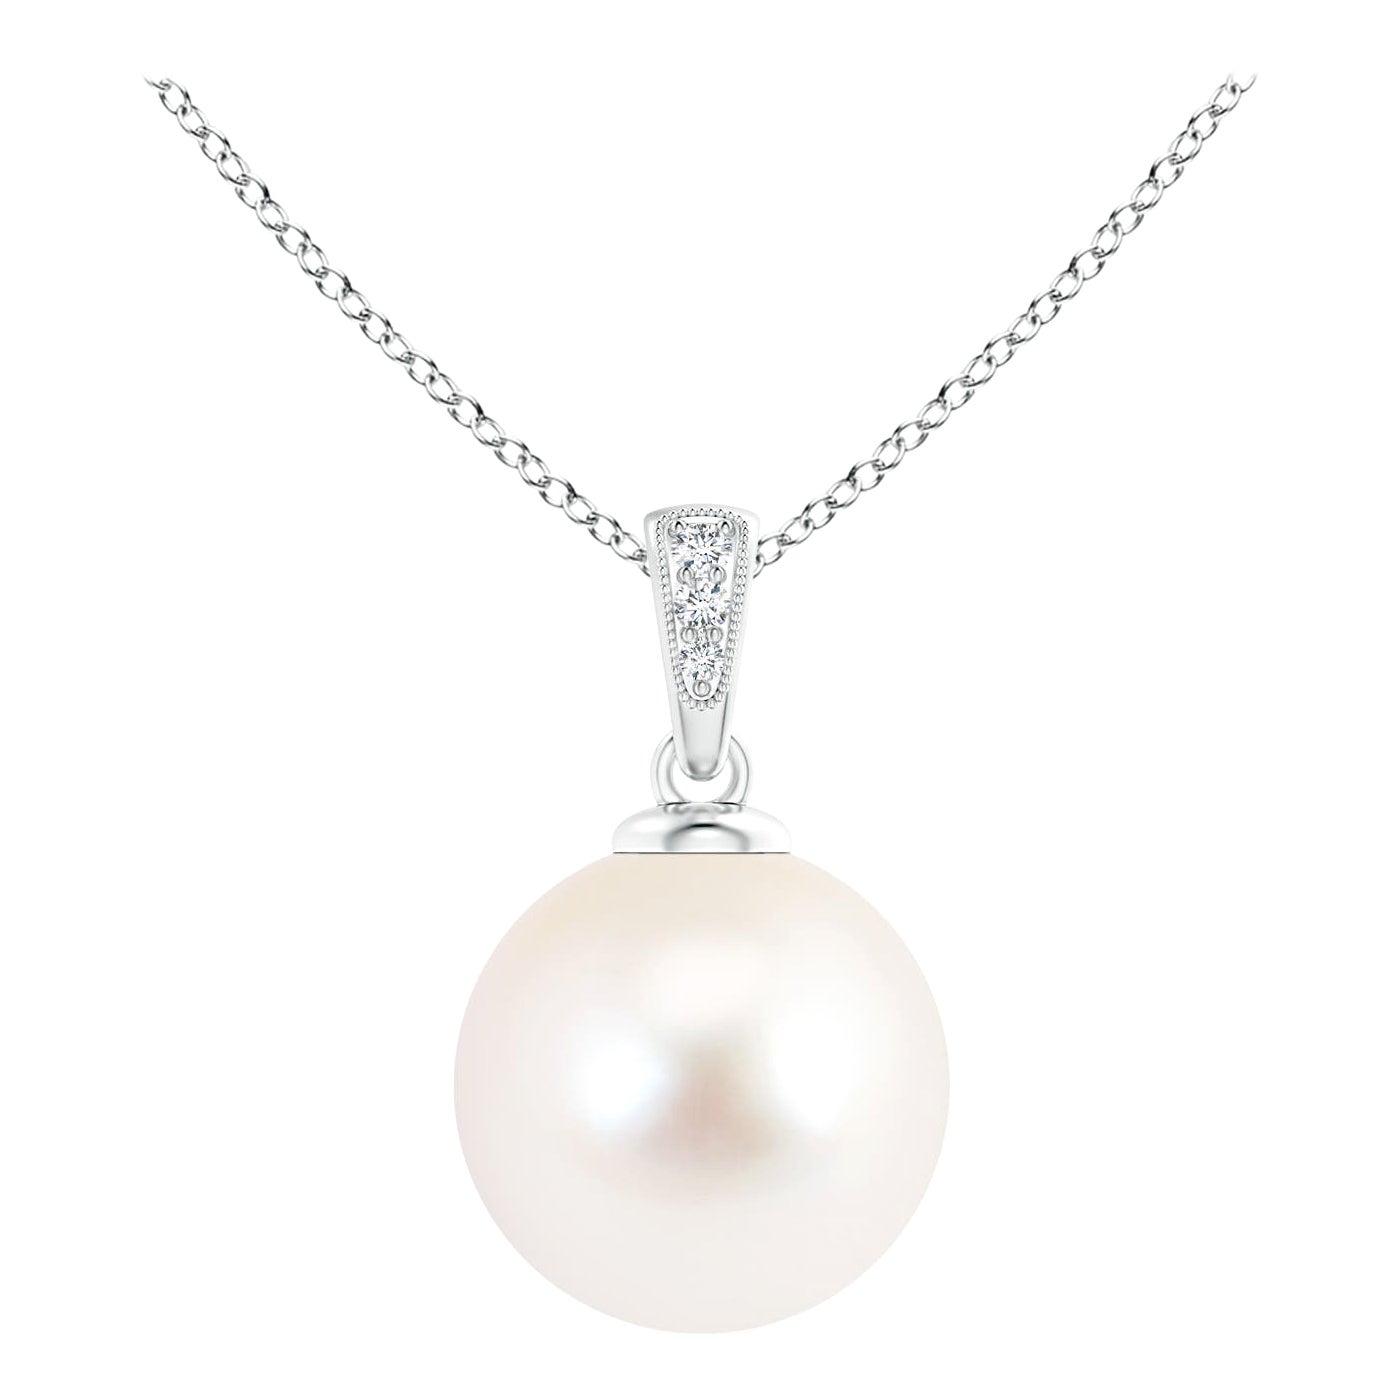 Pendentif solitaire en or blanc 14 carats avec perles de culture d'eau douce et diamants